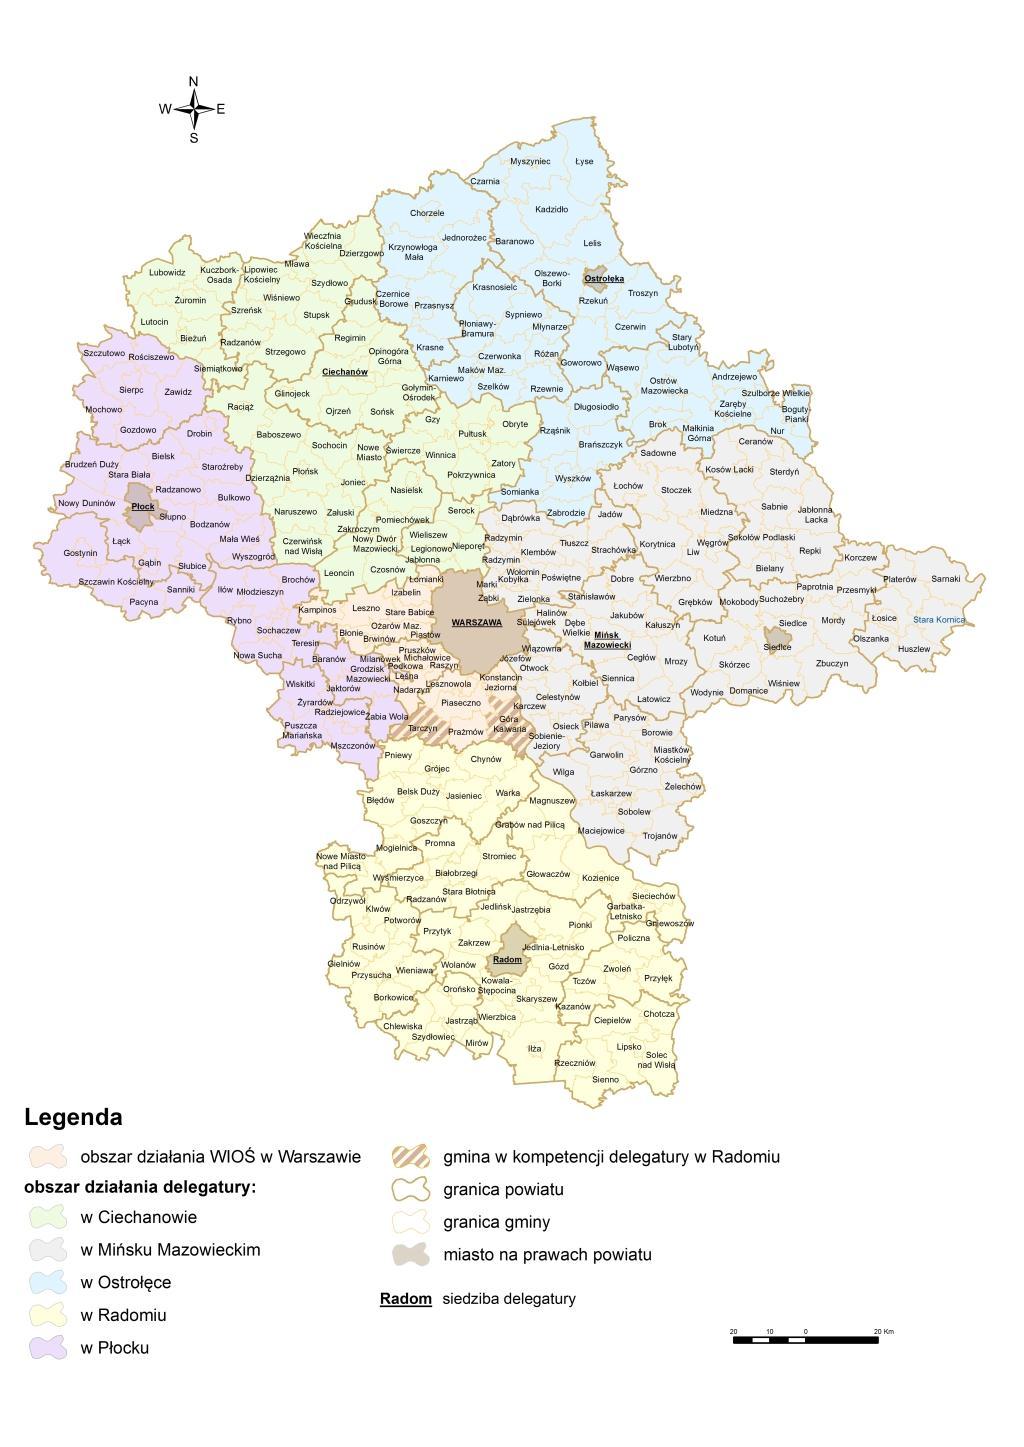 Obszar działania Wojewódzkiego Inspektoratu Ochrony Środowiska w Warszawie przedstawiono na mapie 1.2.